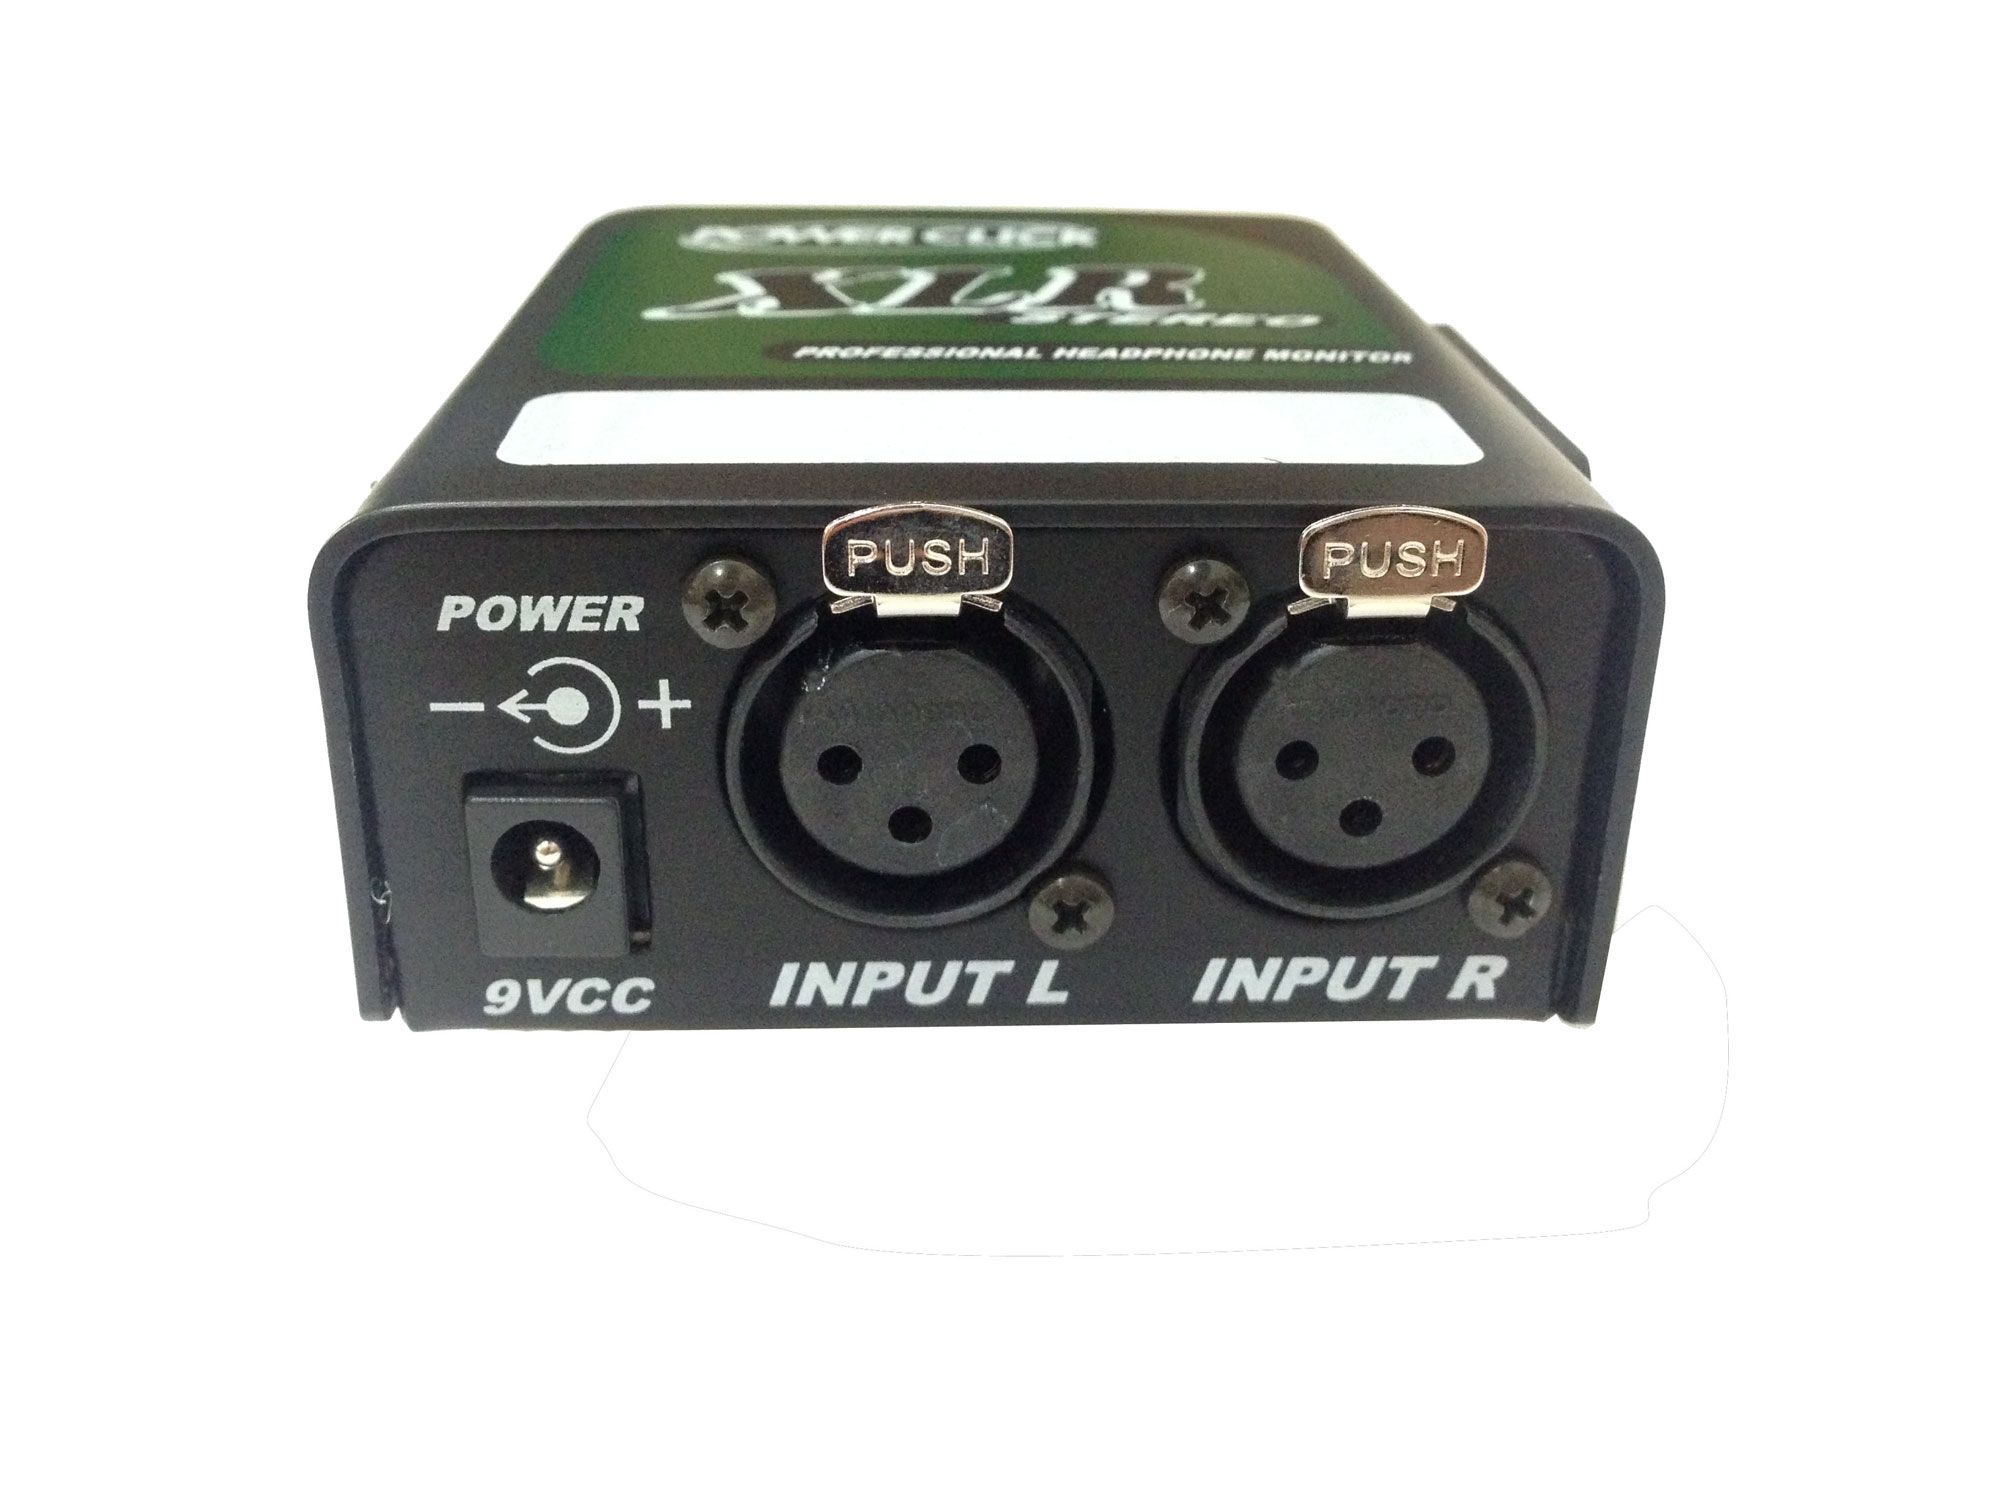 Amplificador de Fone estéreo de 2 canais e conexão XLR | Bateria 9v ou Fonte | Power Click | XLR S